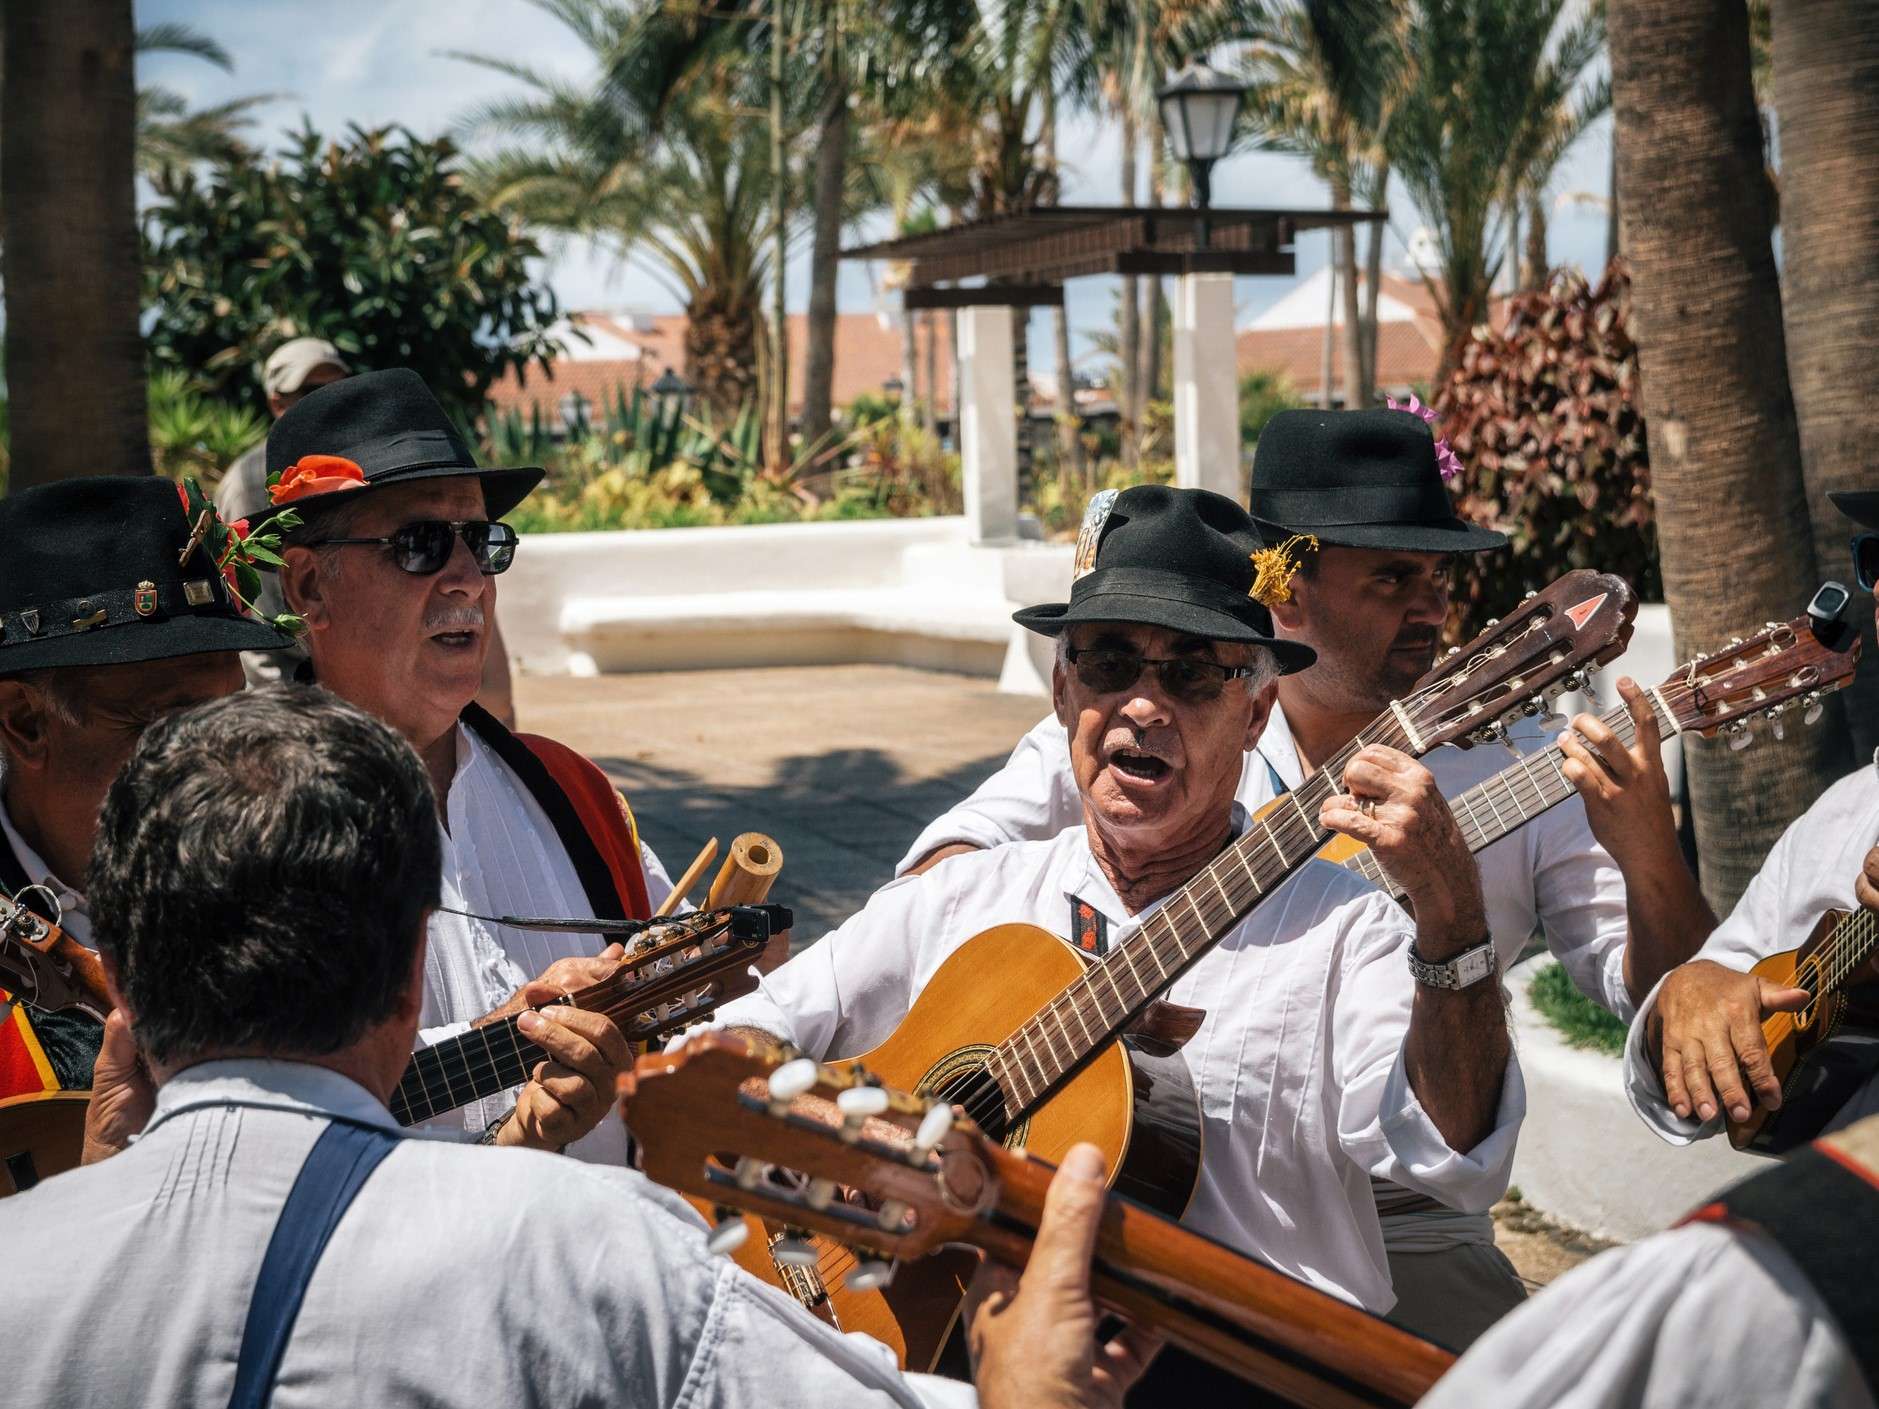 Für die traditonelle Musik auf Teneriffa hat die Gitarre eine große Bedeutung.